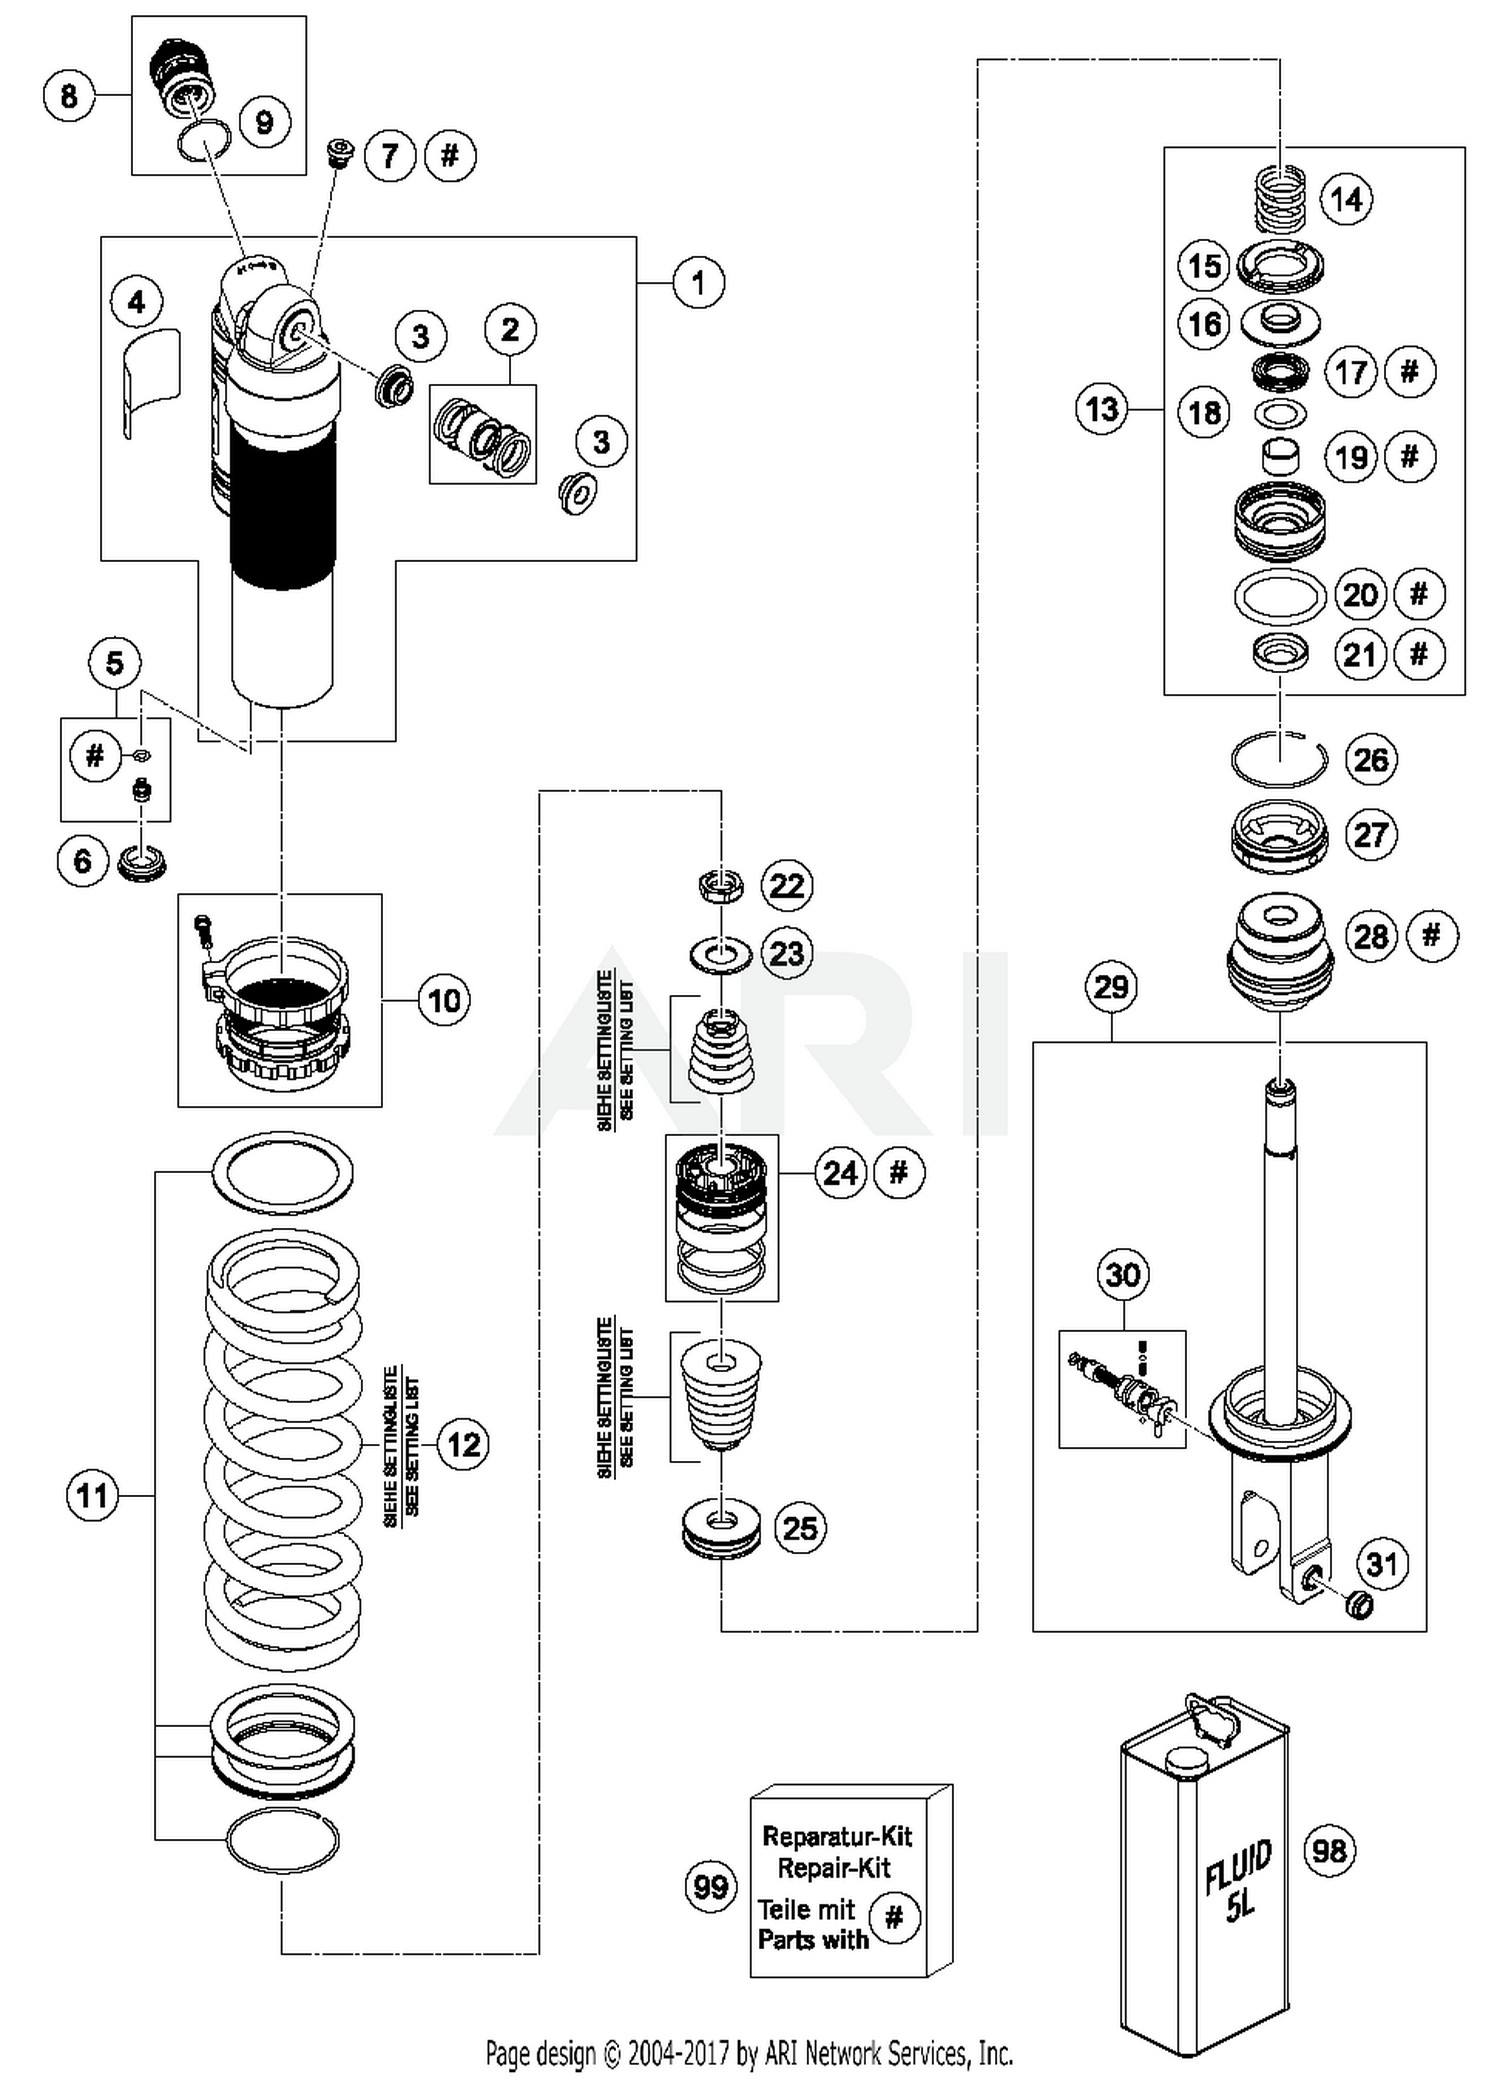 Shock Absorber Diagram 2016 Husqvarna Fe 501 Shock Absorber Disassembled Parts Best Of Shock Absorber Diagram